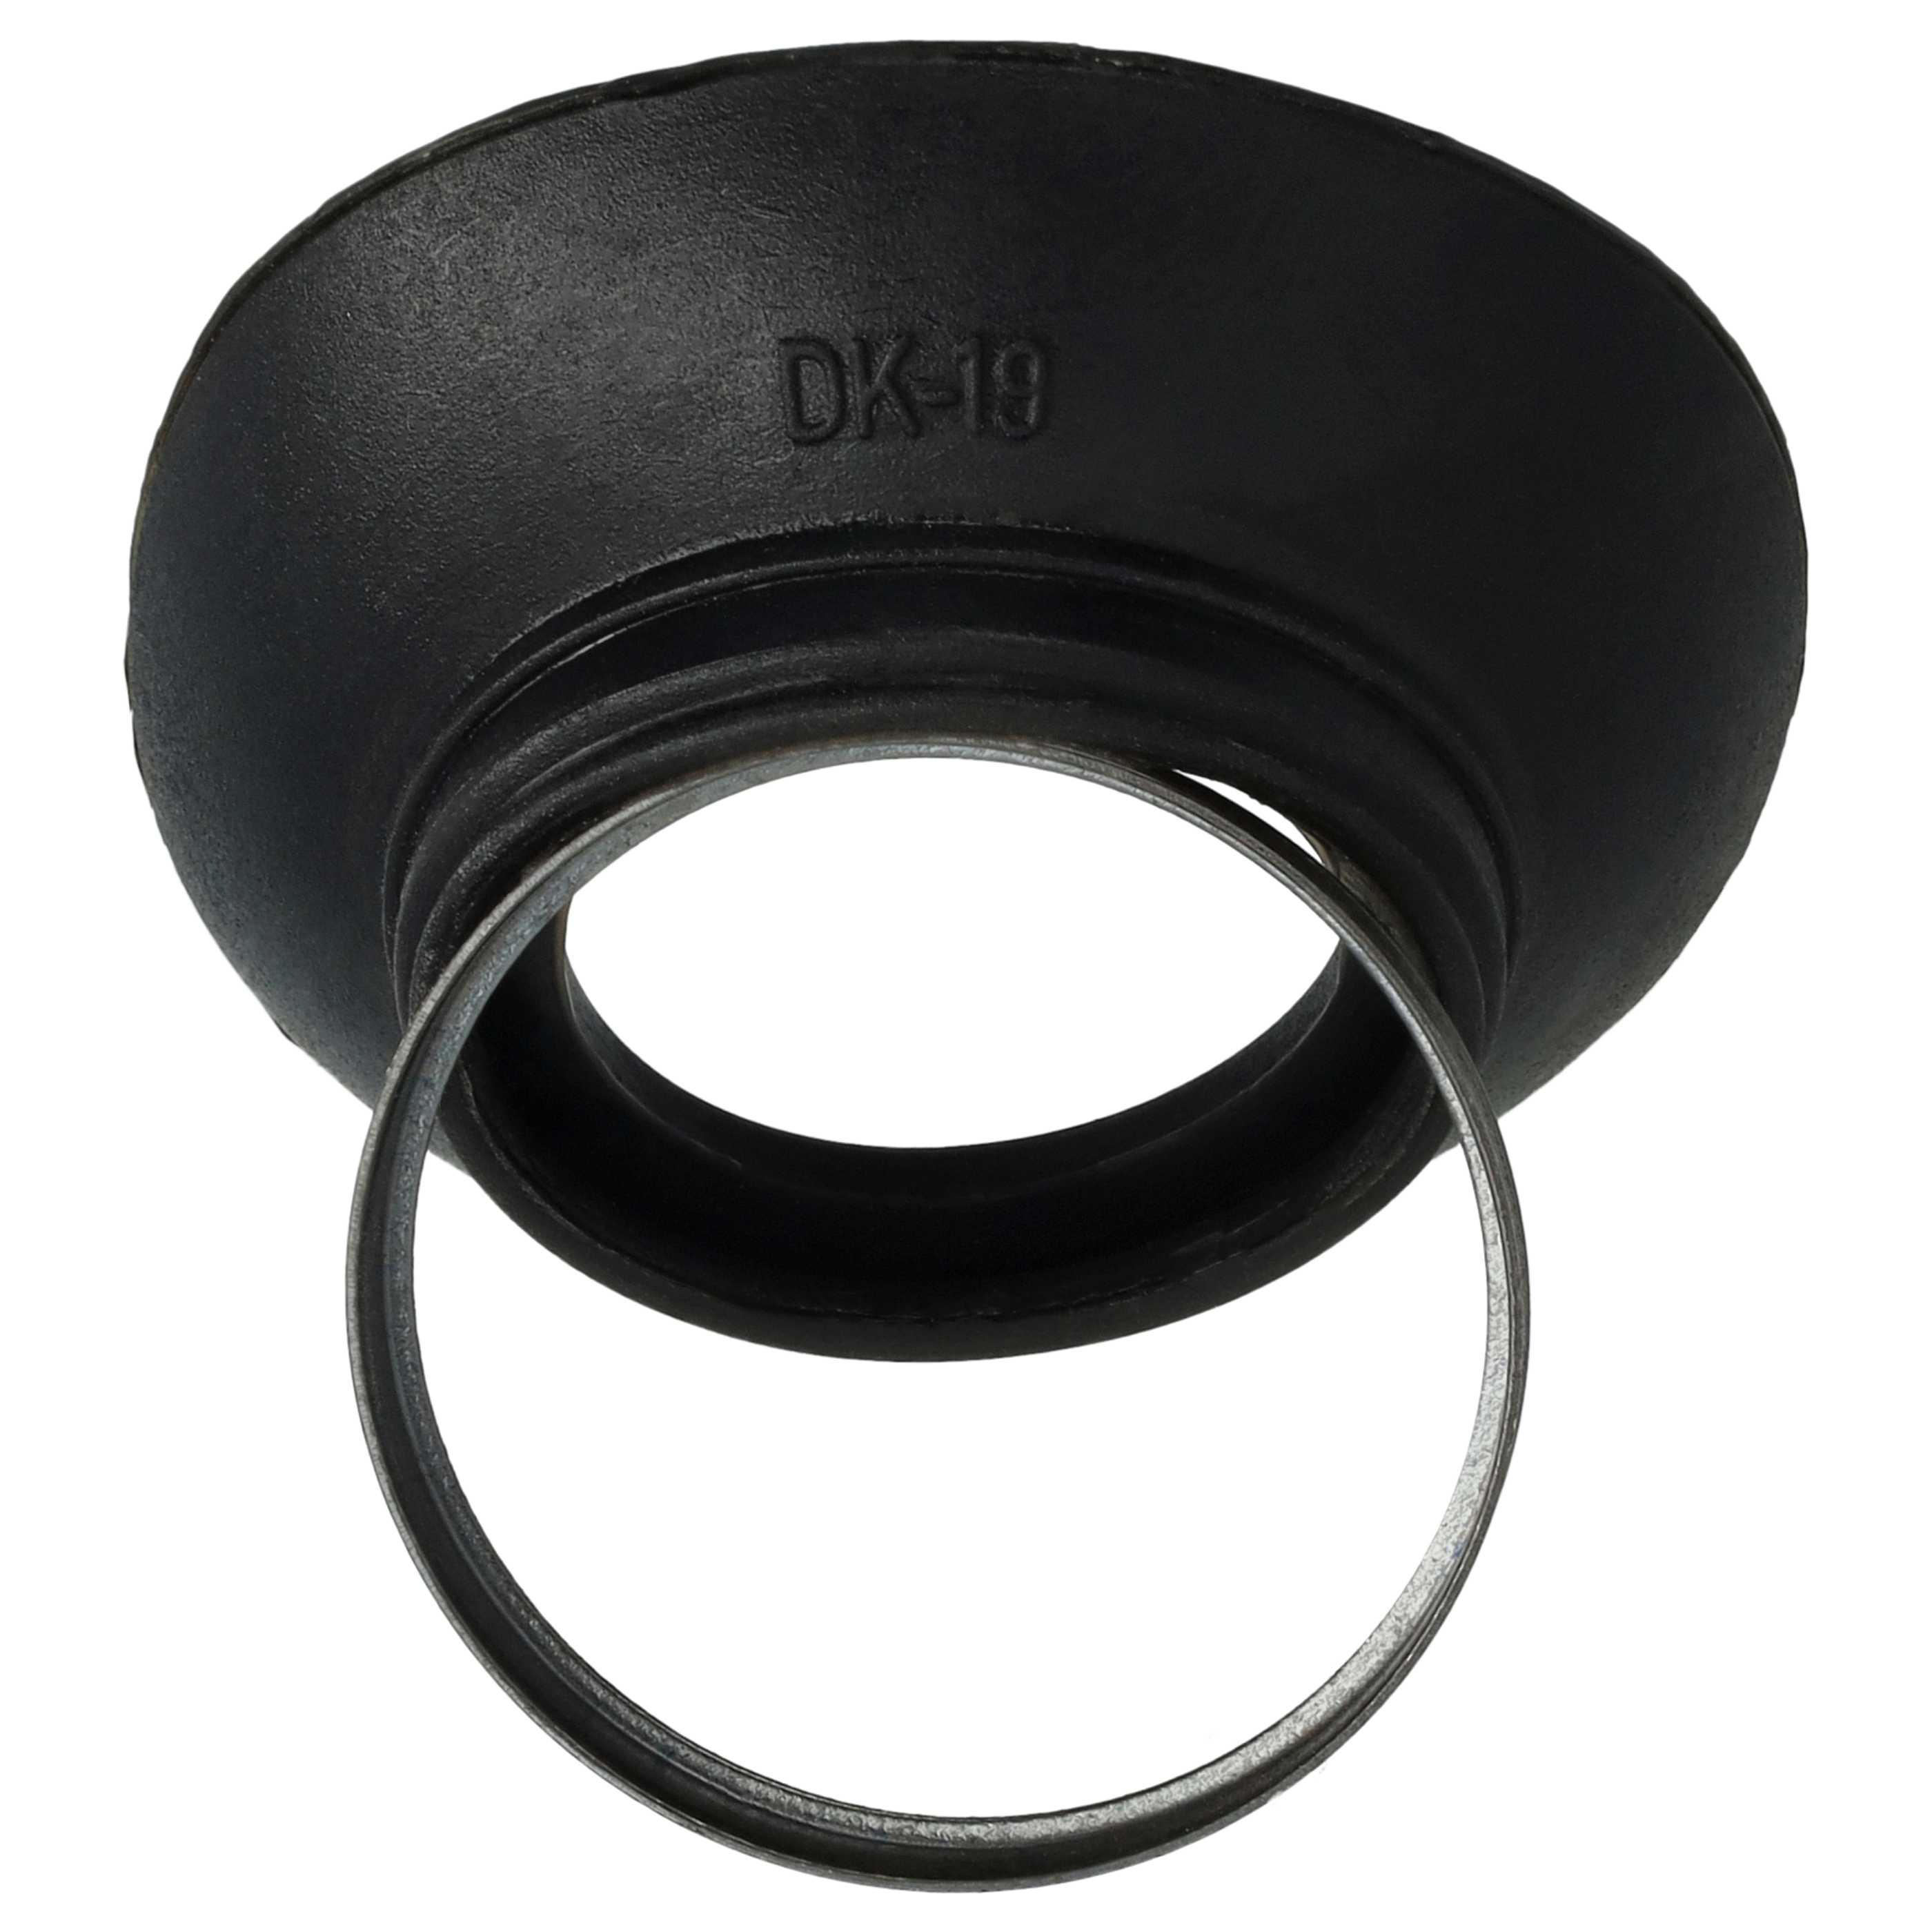 Visor ocular reemplaza Nikon DK-19 para cámaras Nikon D810a, etc., plástico